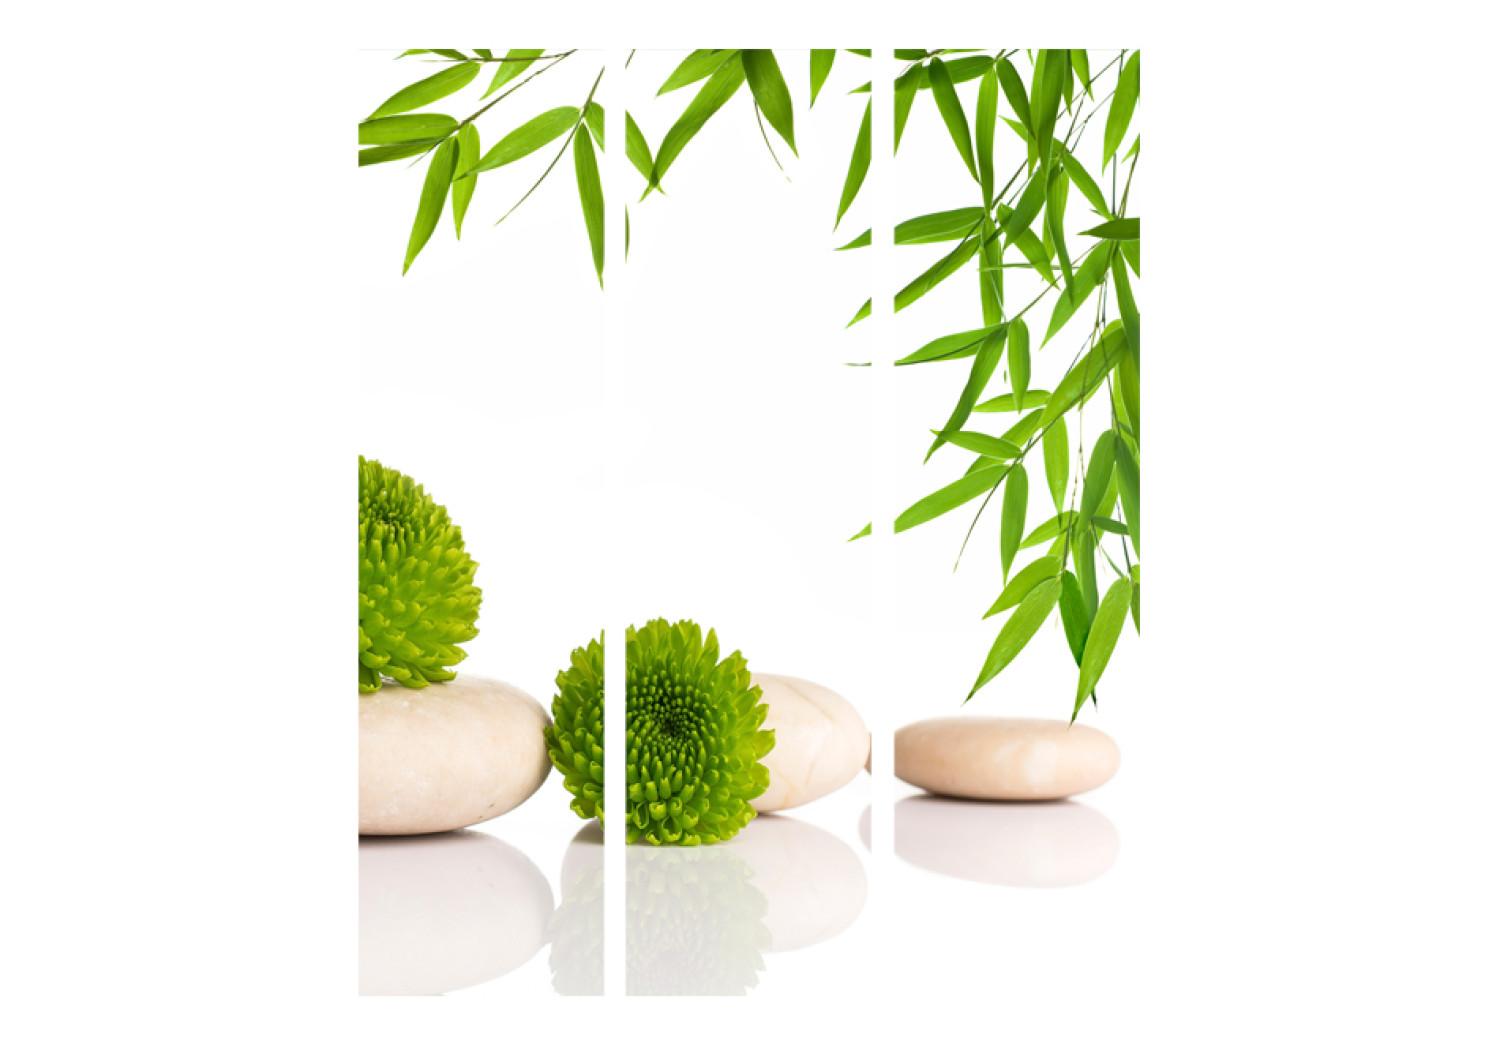 Biombo Green Relax - piedras verdes de estilo Zen y planta sobre fondo blanco